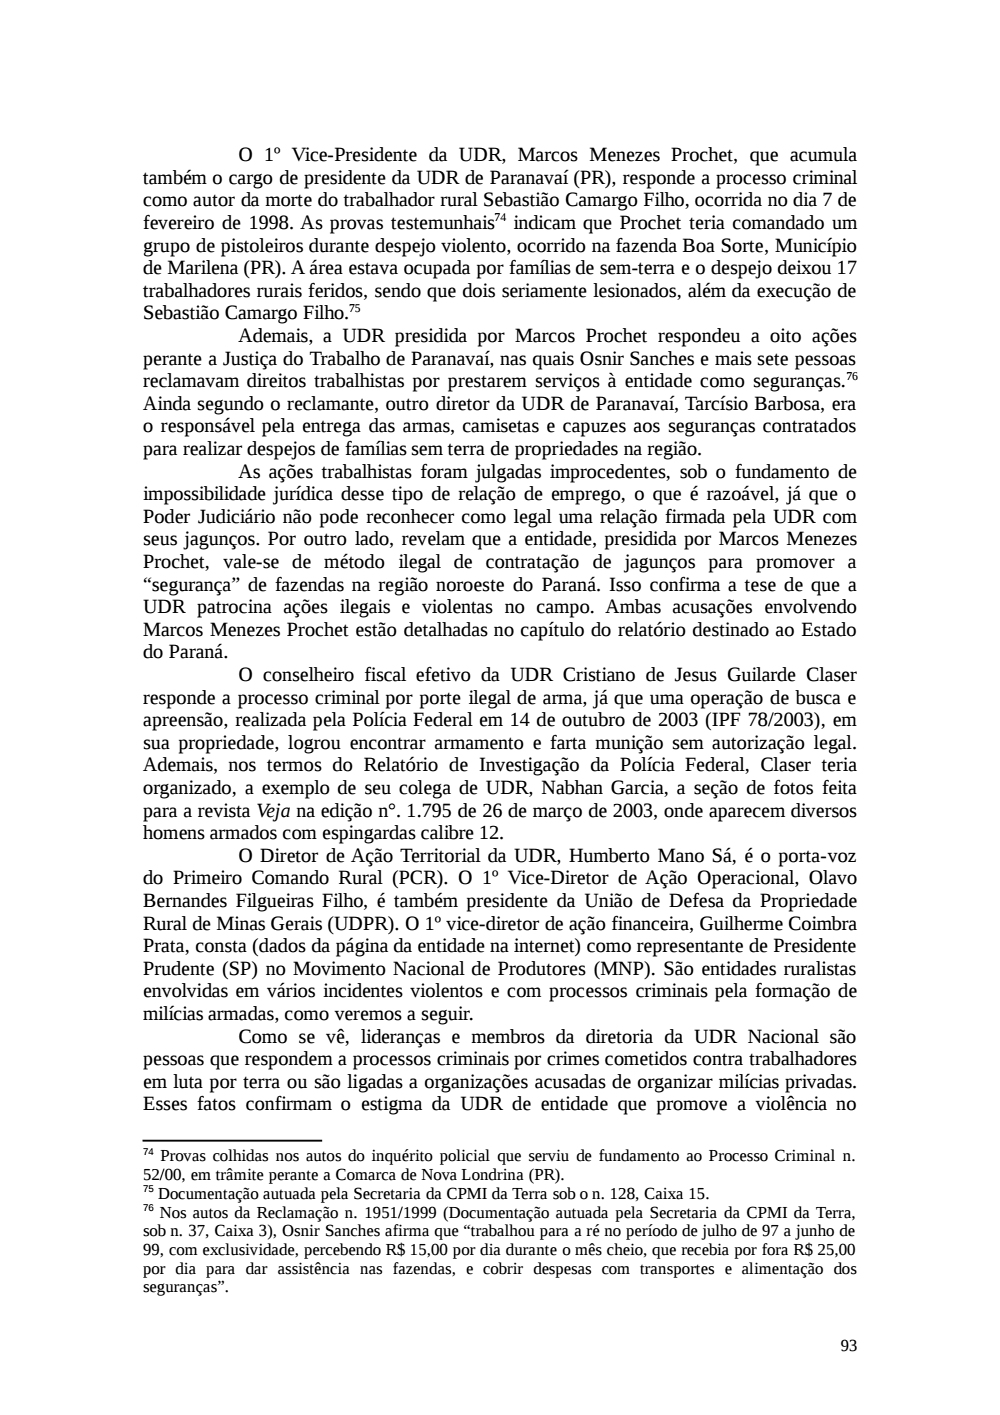 Page 93 from Relatório final da comissão